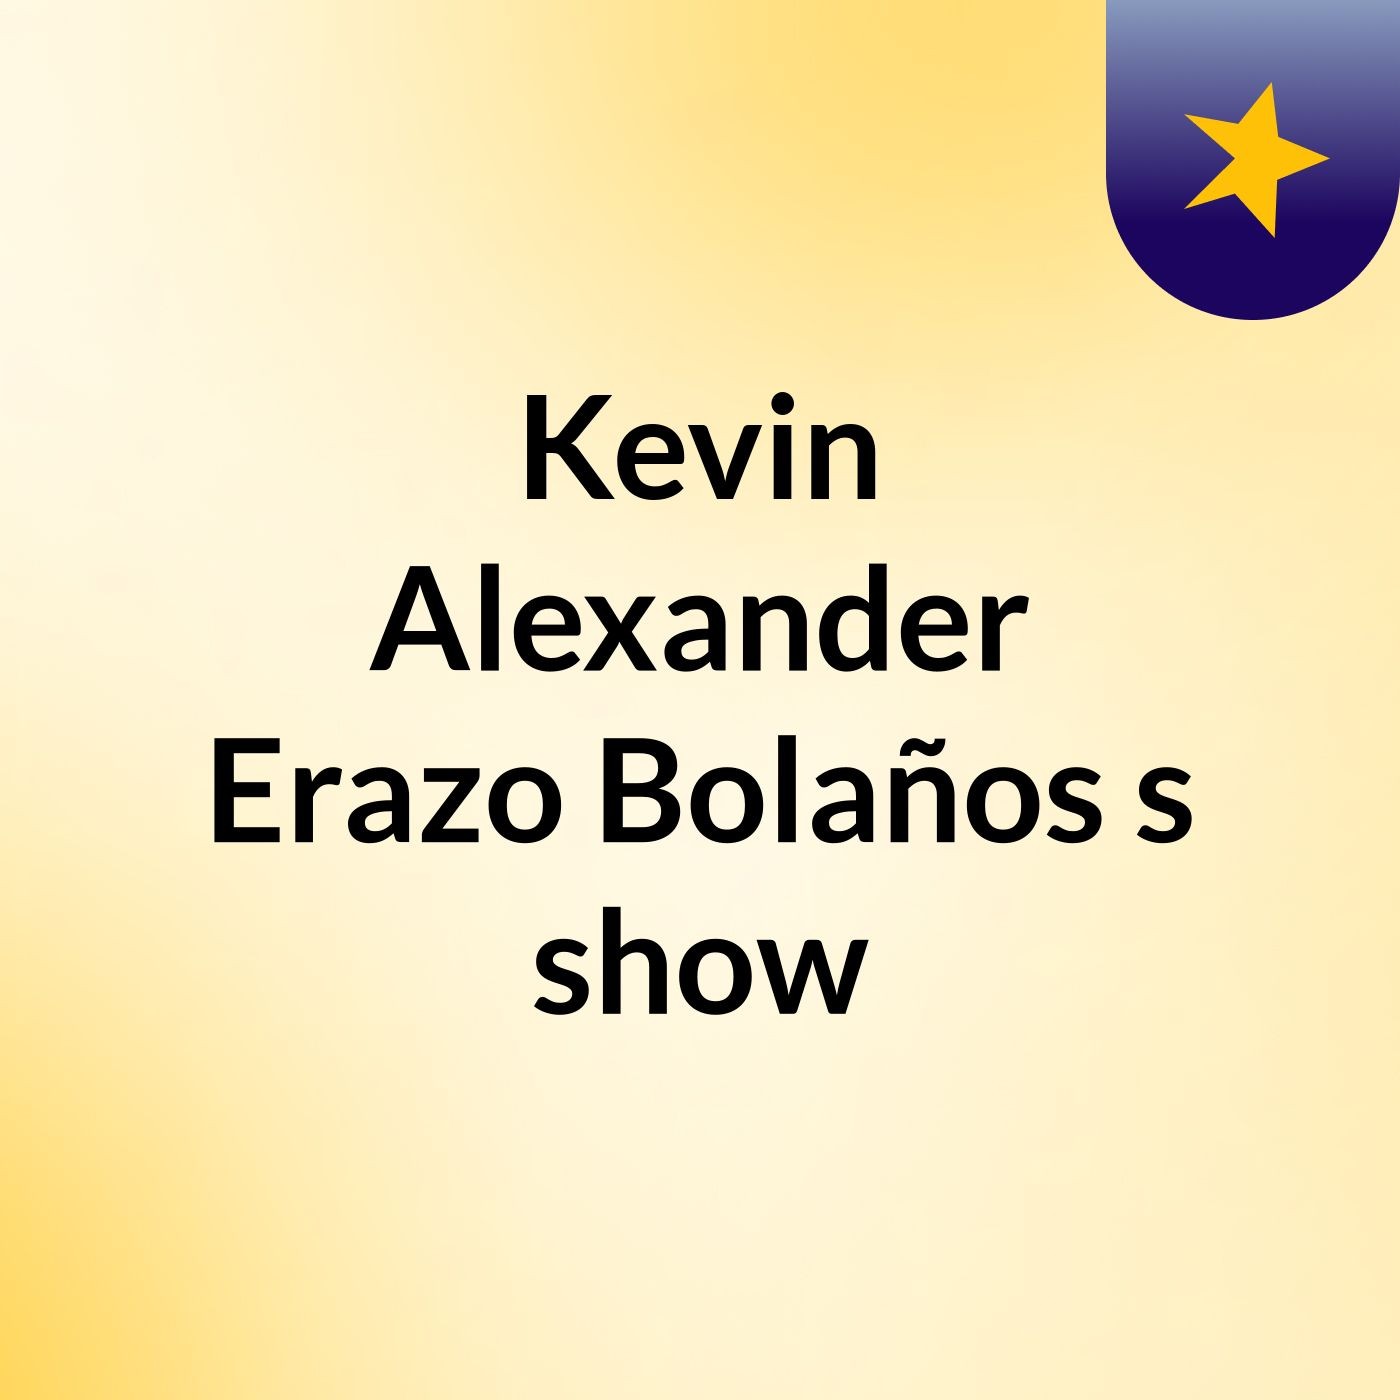 Kevin Alexander Erazo Bolaños's show